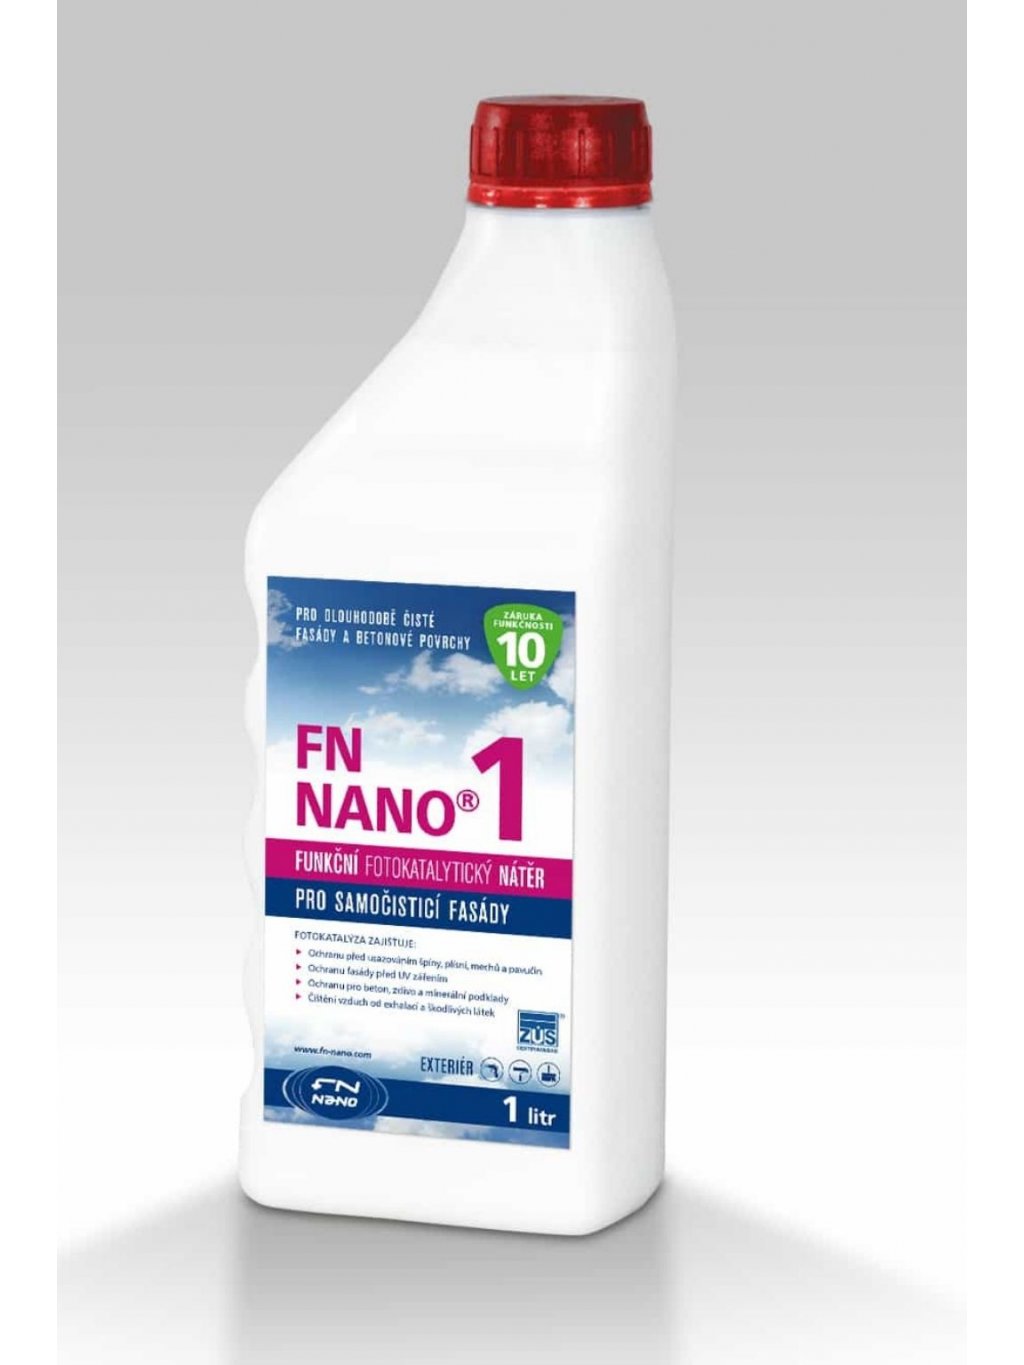 Fotokatalytický nátěr FN NANO®1 pro venkovní použití (Objem 3 litry)